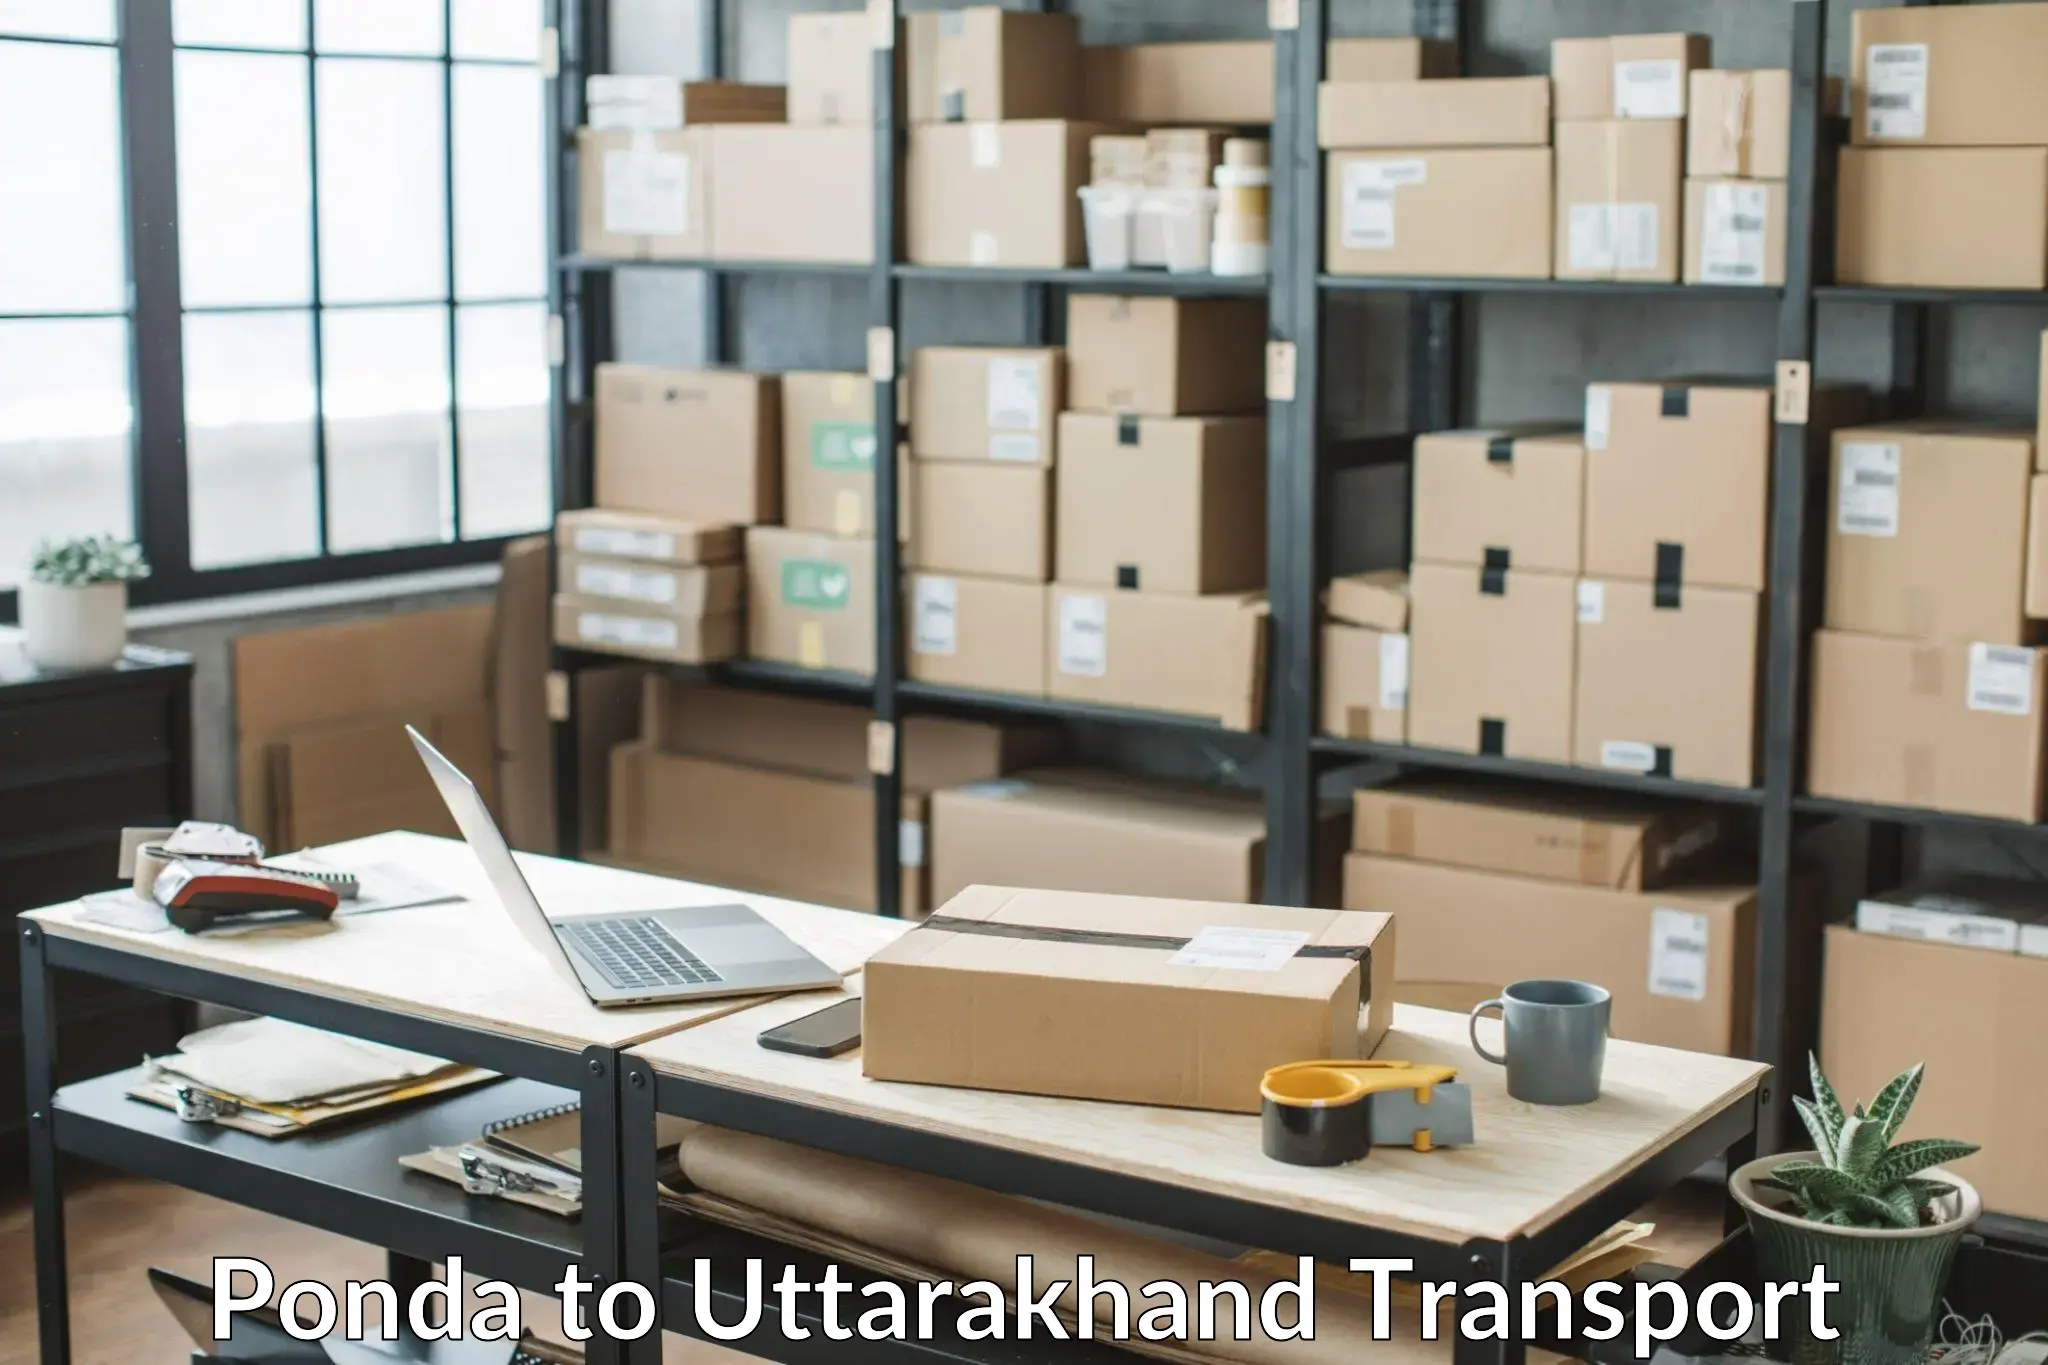 Goods delivery service Ponda to Uttarakhand